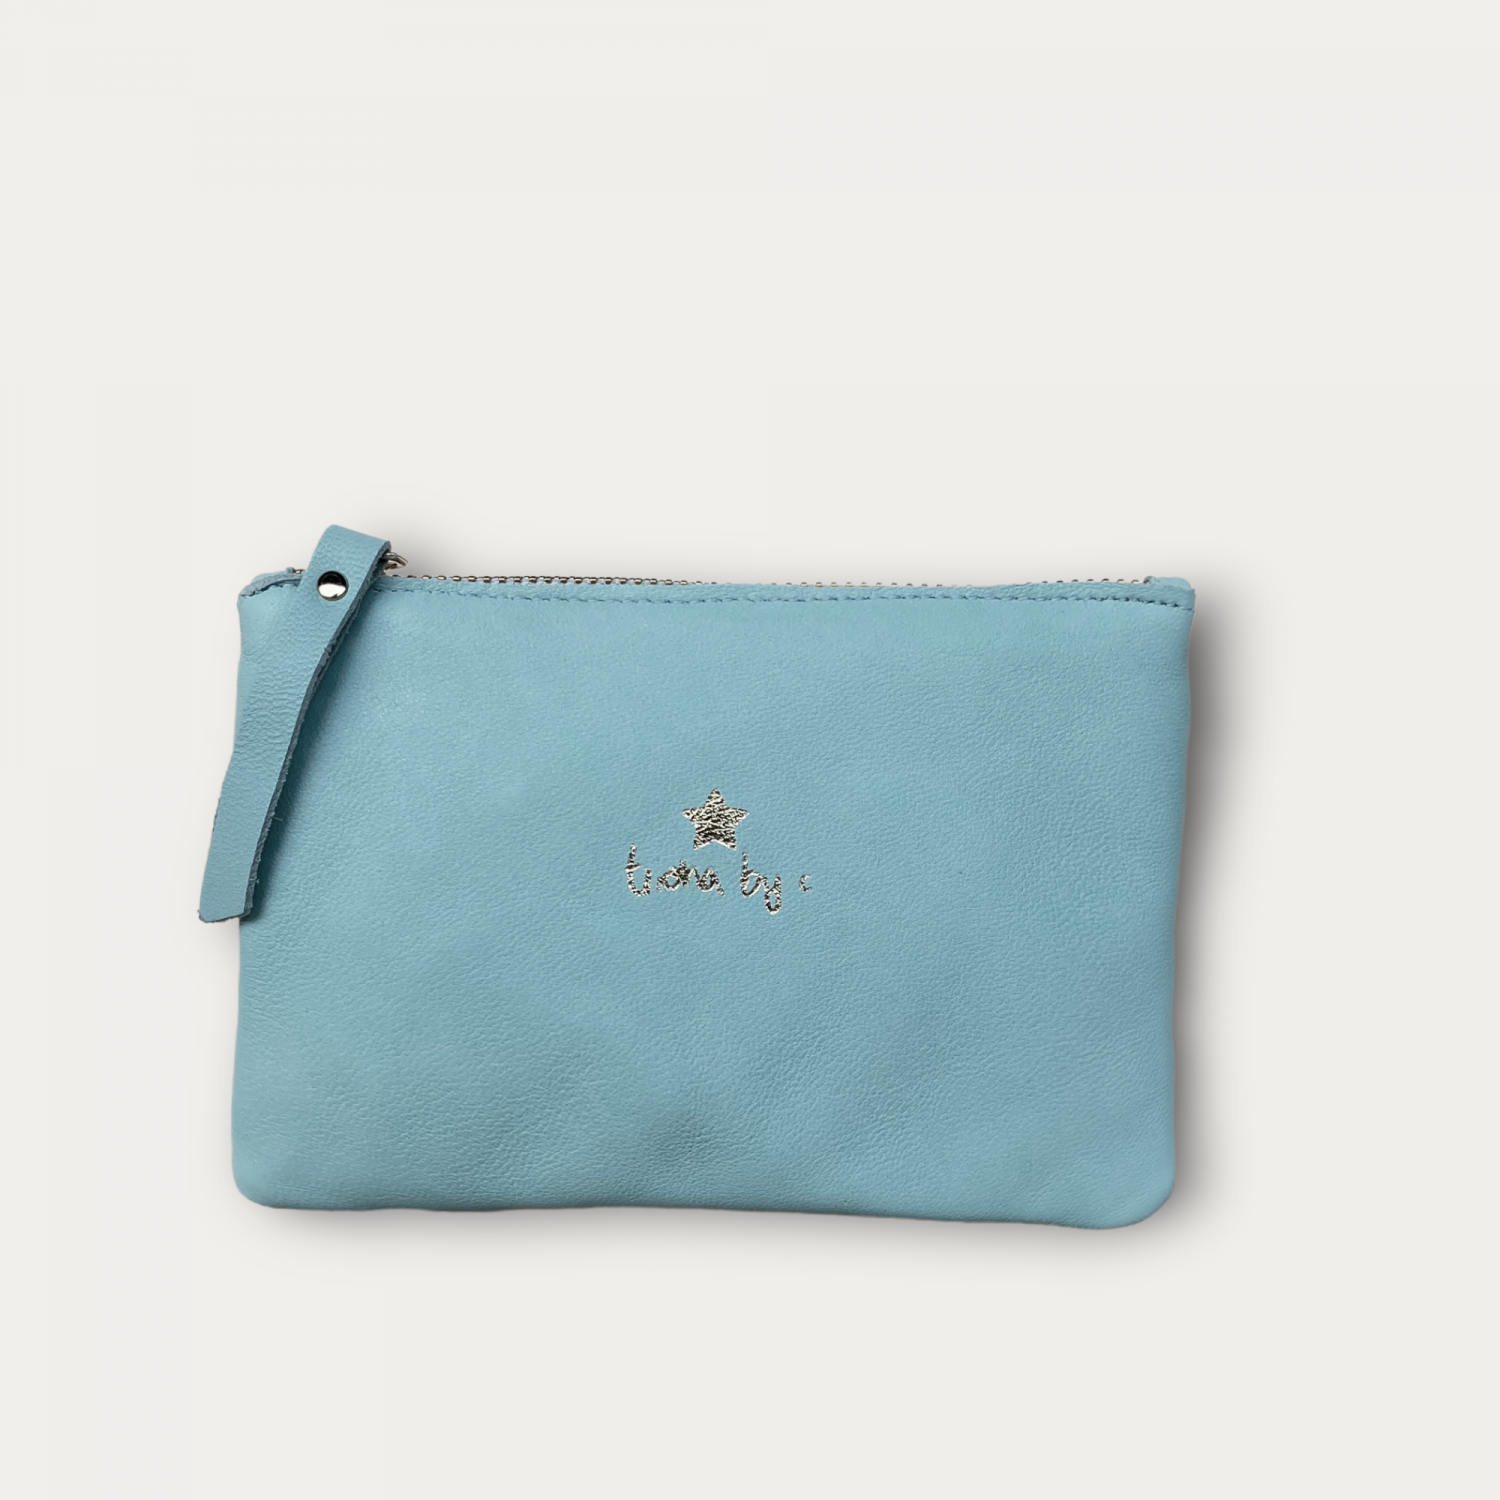 Aqua leather wallet